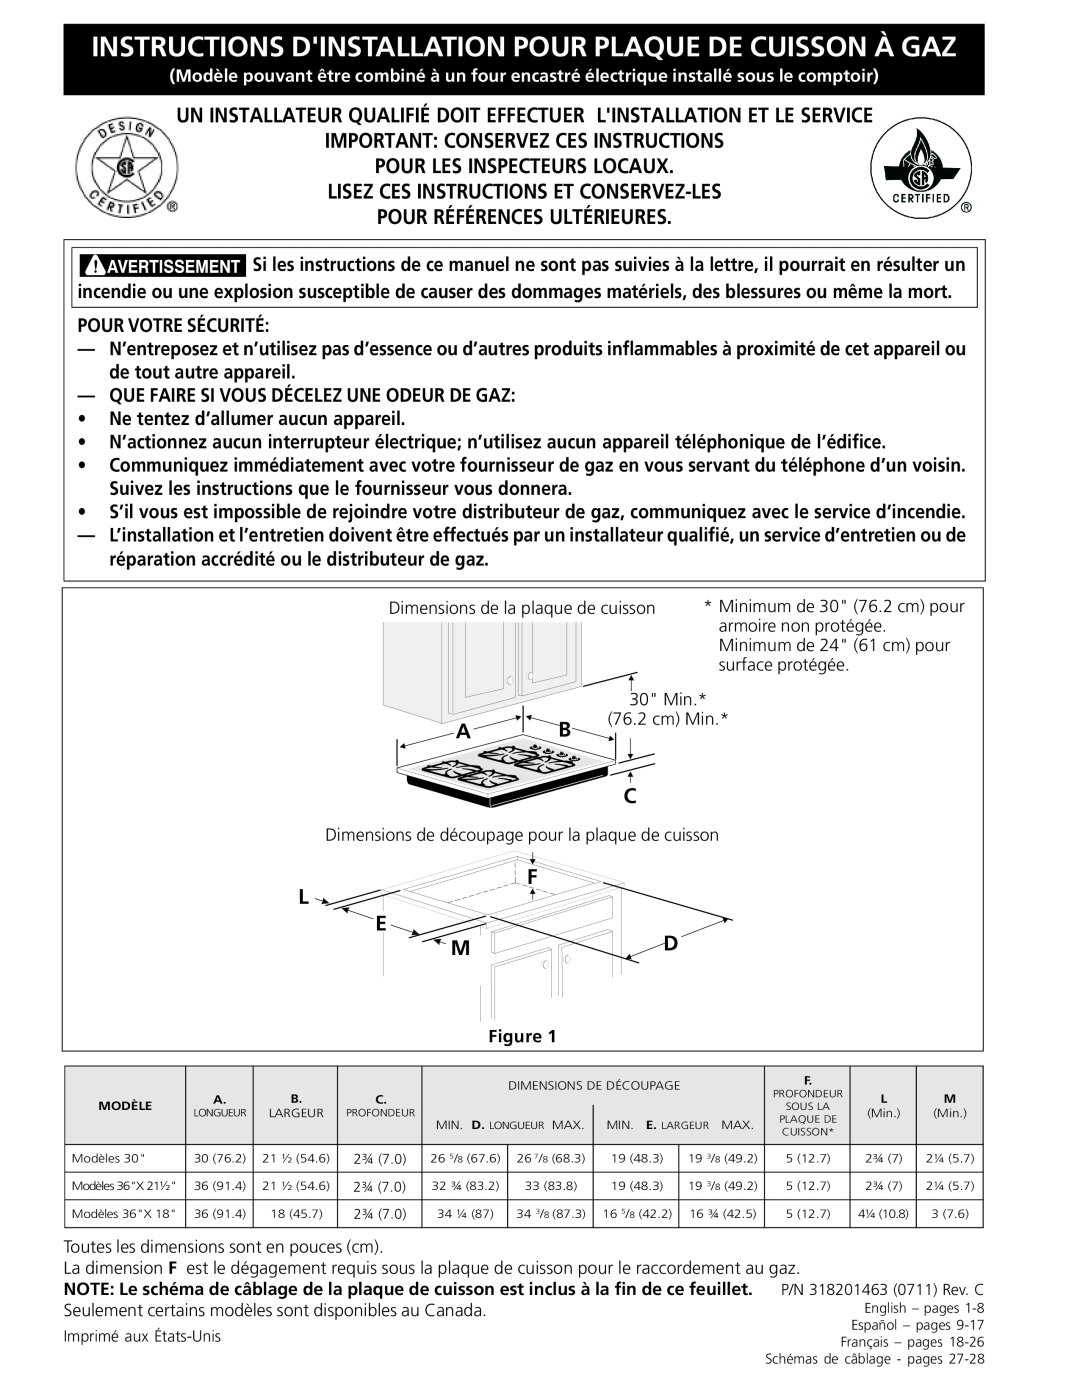 Frigidaire FGC36S5EC, 318201463 (0711) dimensions Instructions Dinstallation Pour Plaque De Cuisson À Gaz, L E M 